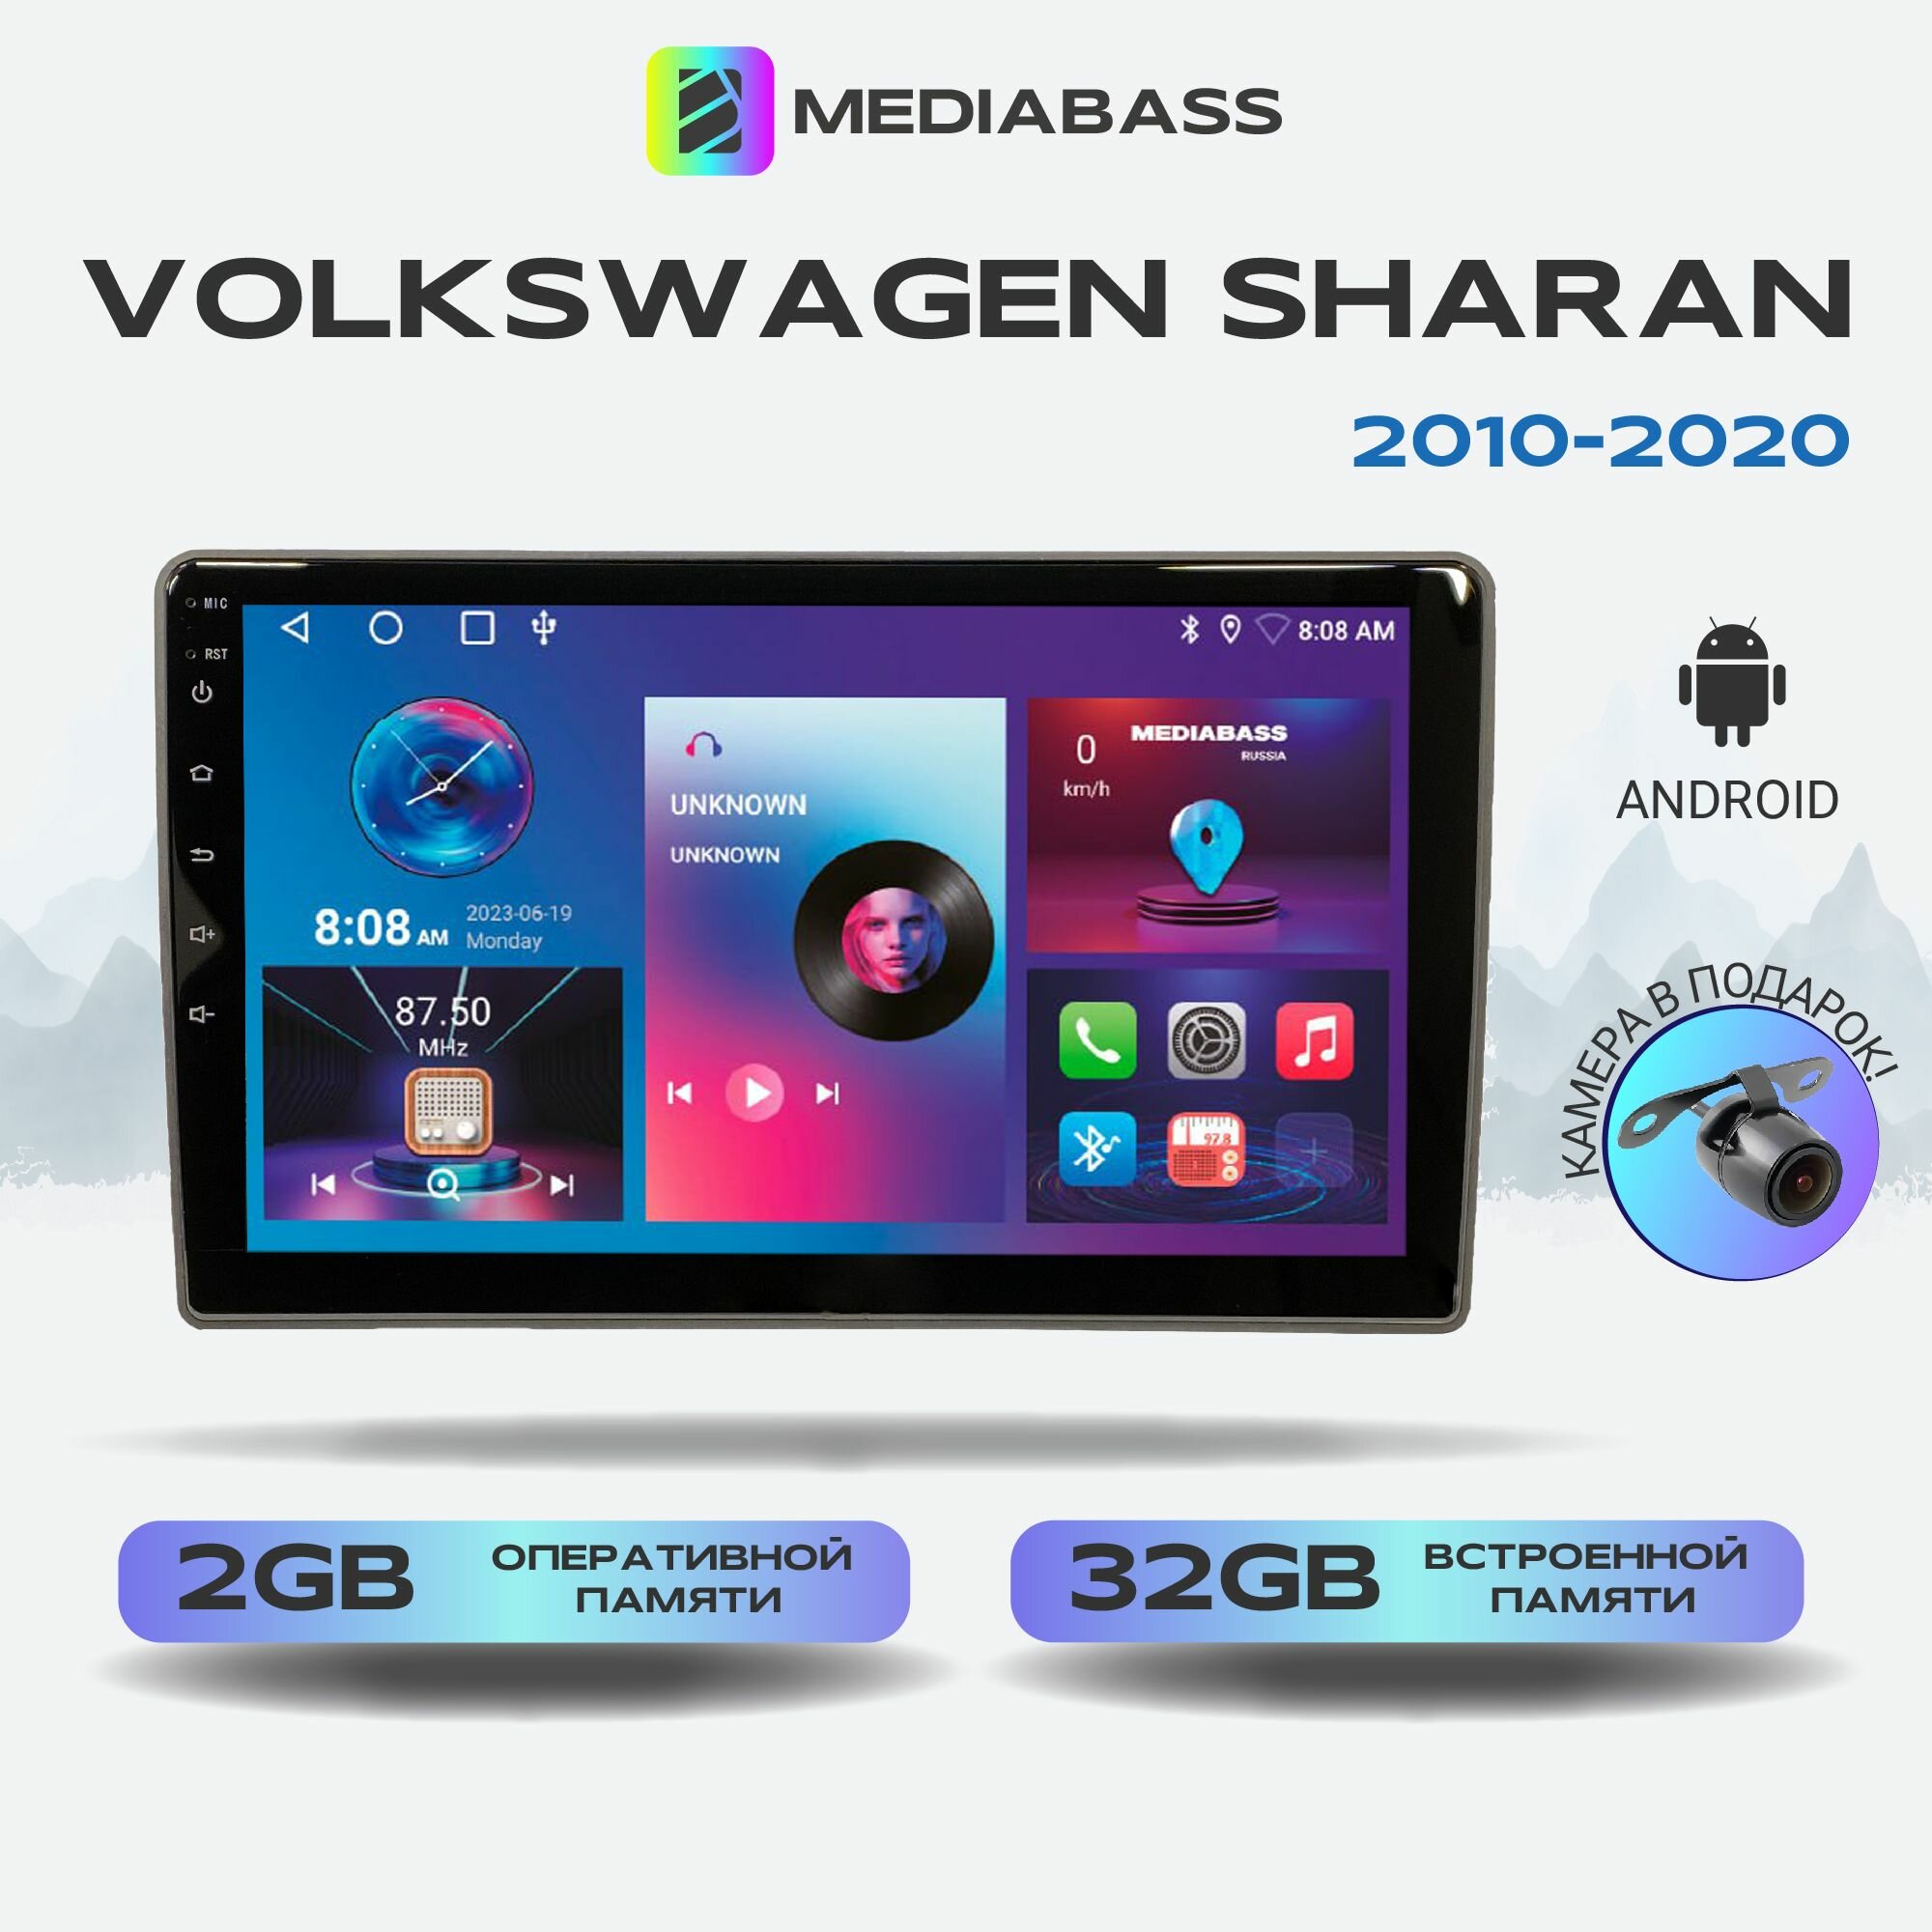 Автомагнитола Mediabass Volkswagen Sharan 2010+, 2/32ГБ, 4-ядерный процессор, QLED экран с разрешением 1280*720, чип-усилитель YD7388, Android 12 / Фольксваген Шаран